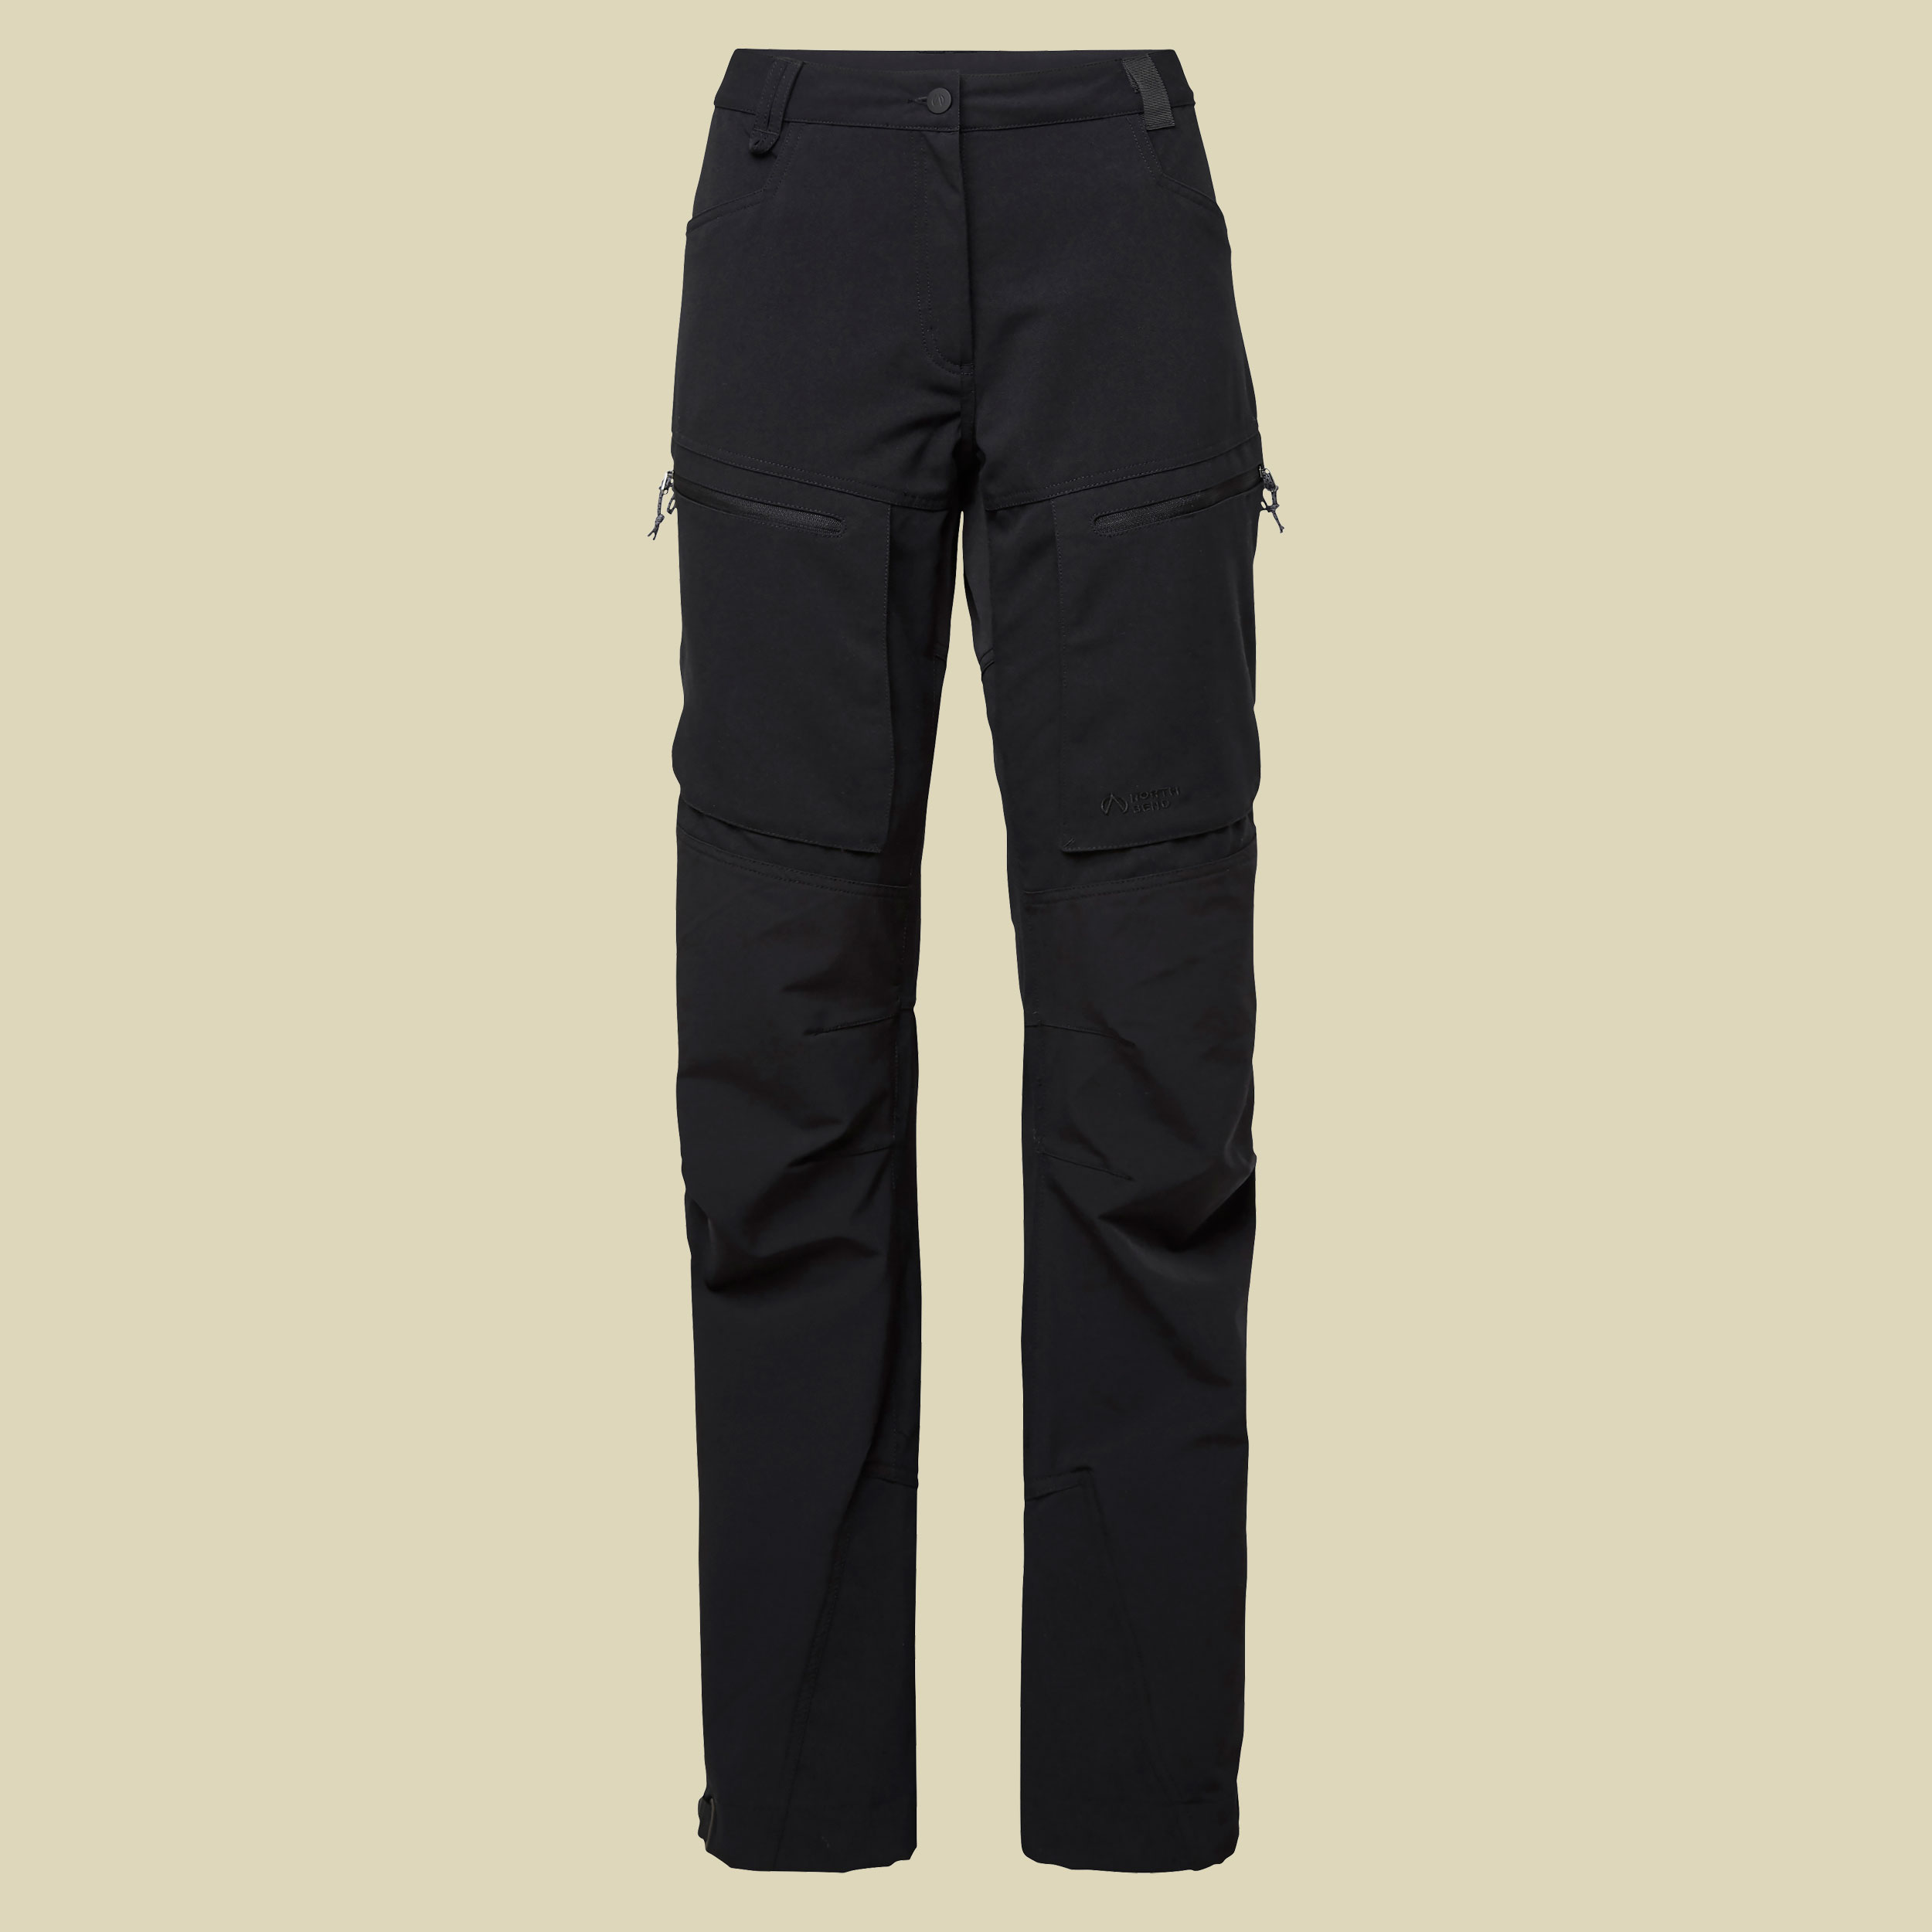 Trekk Pants Damen Trekkinghose Größe 38 Farbe schwarz 9500